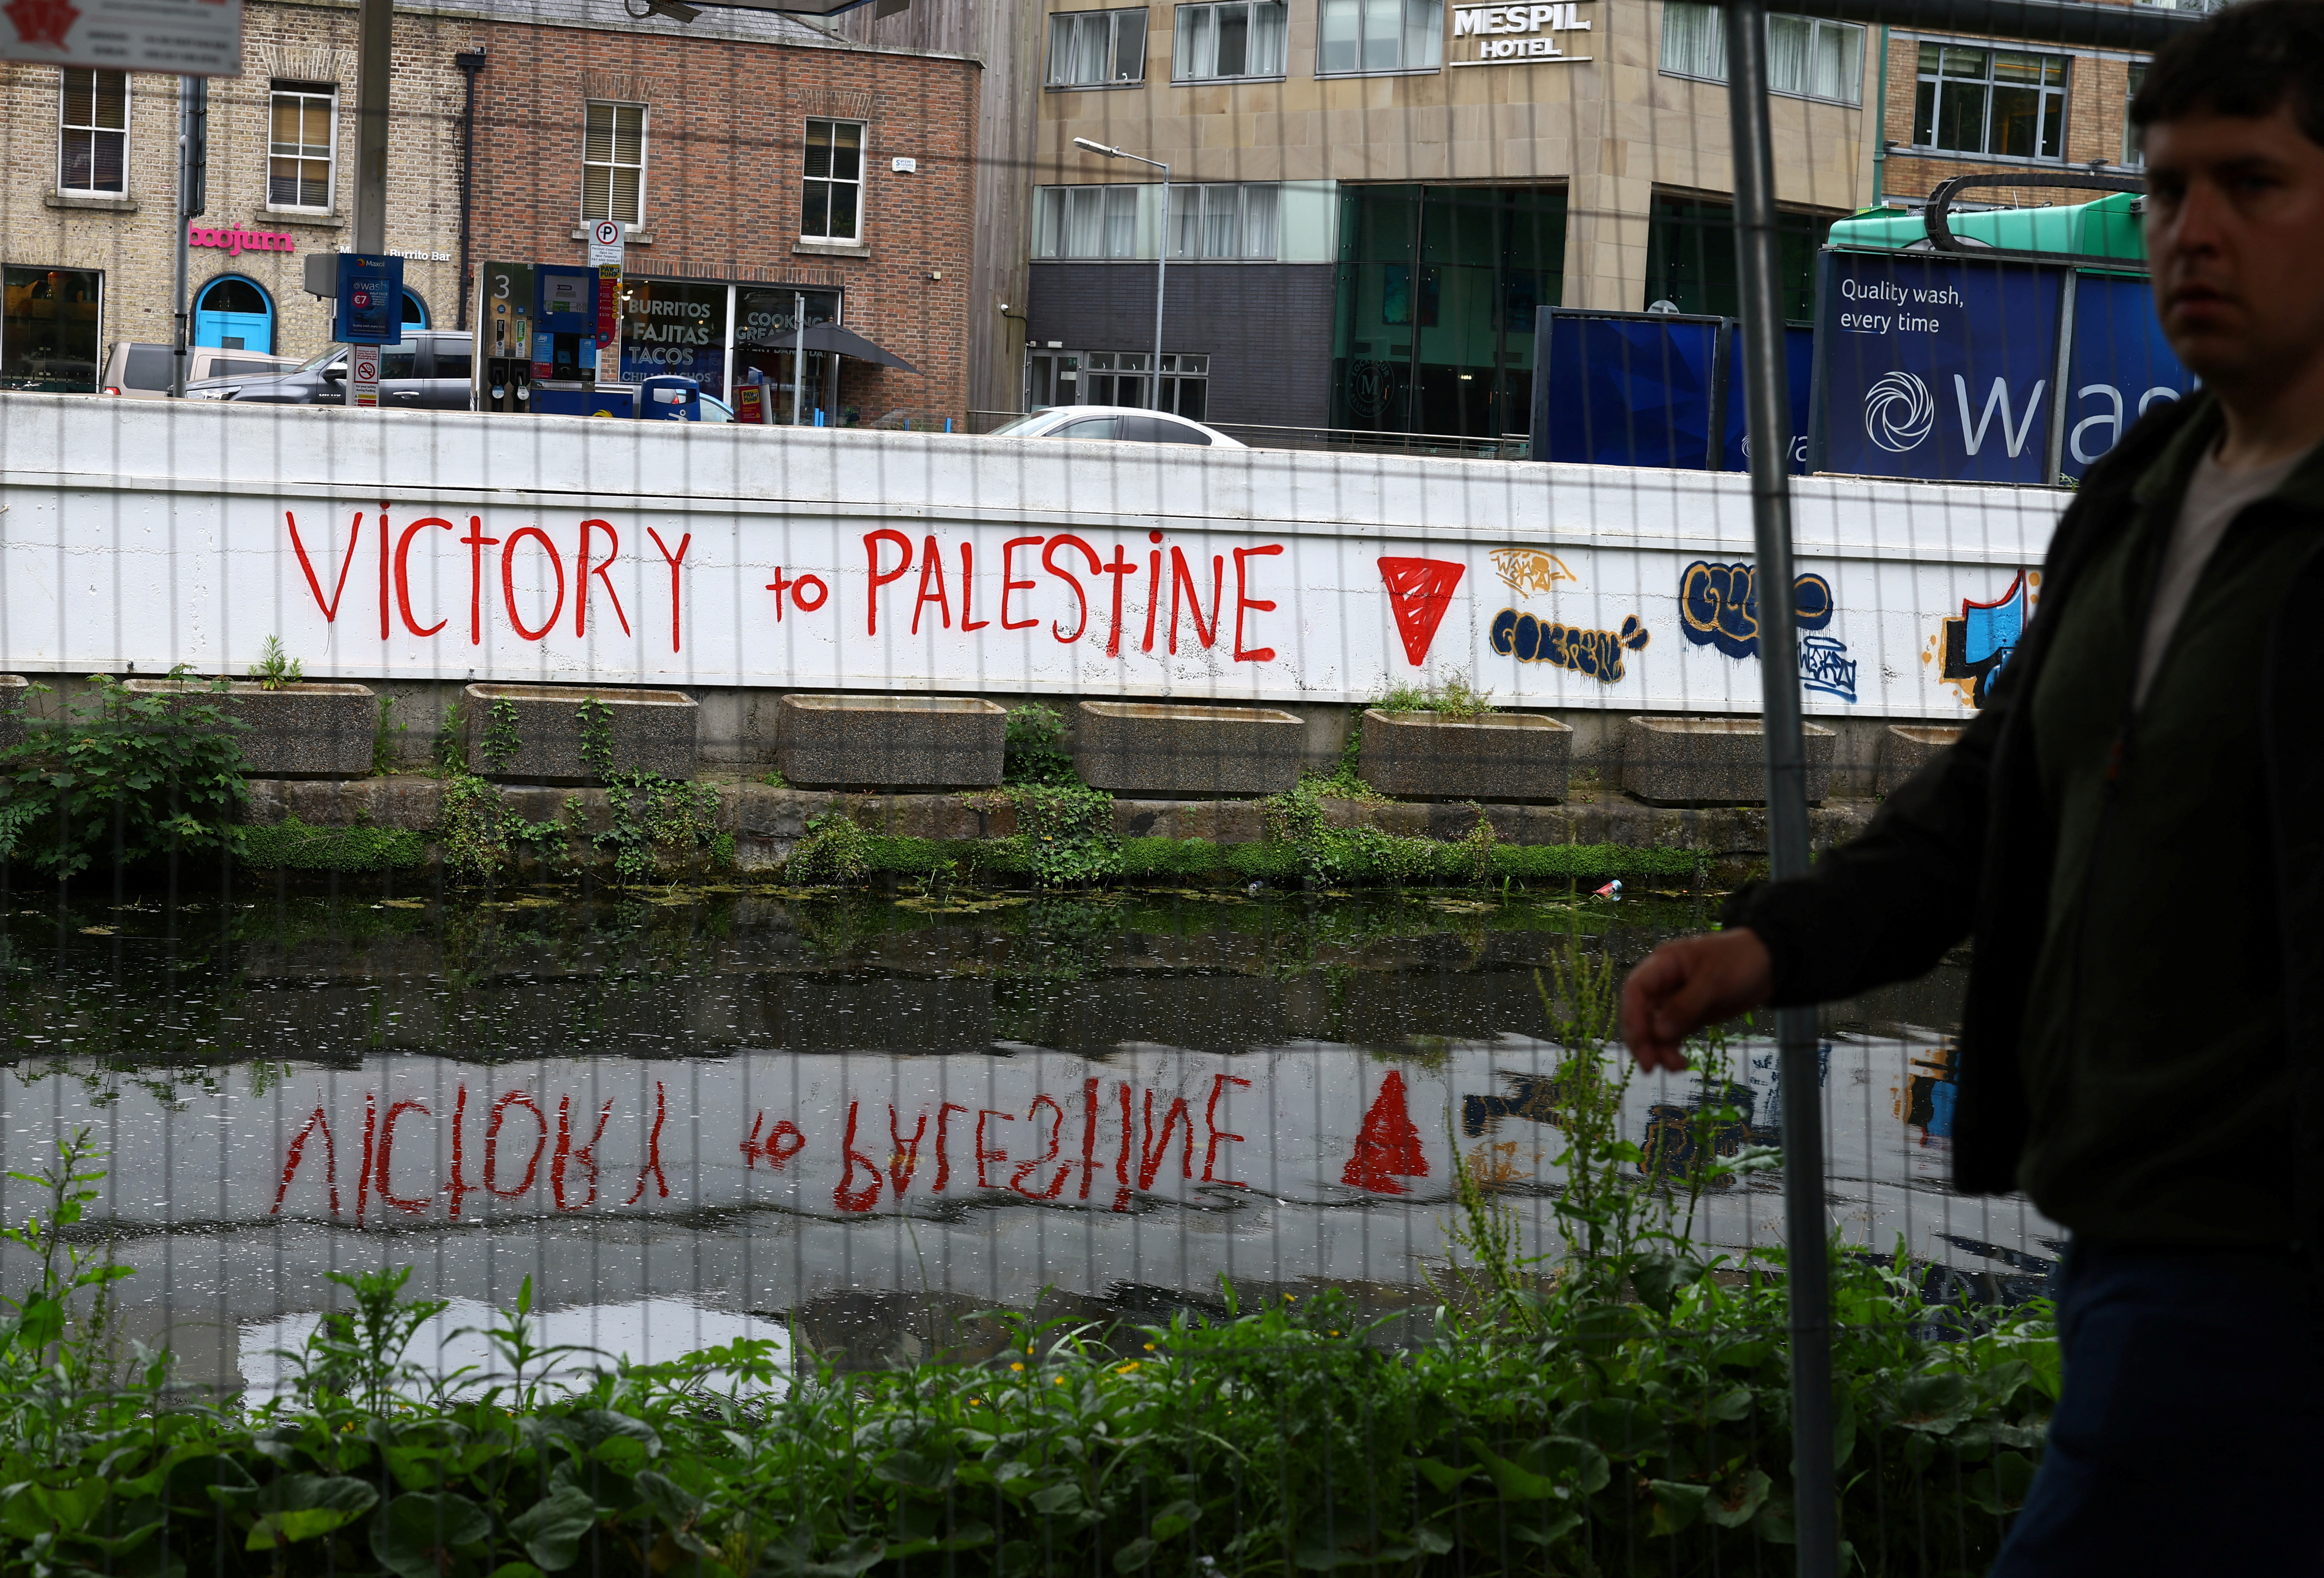 Victory to Palestine graffiti in Dublin